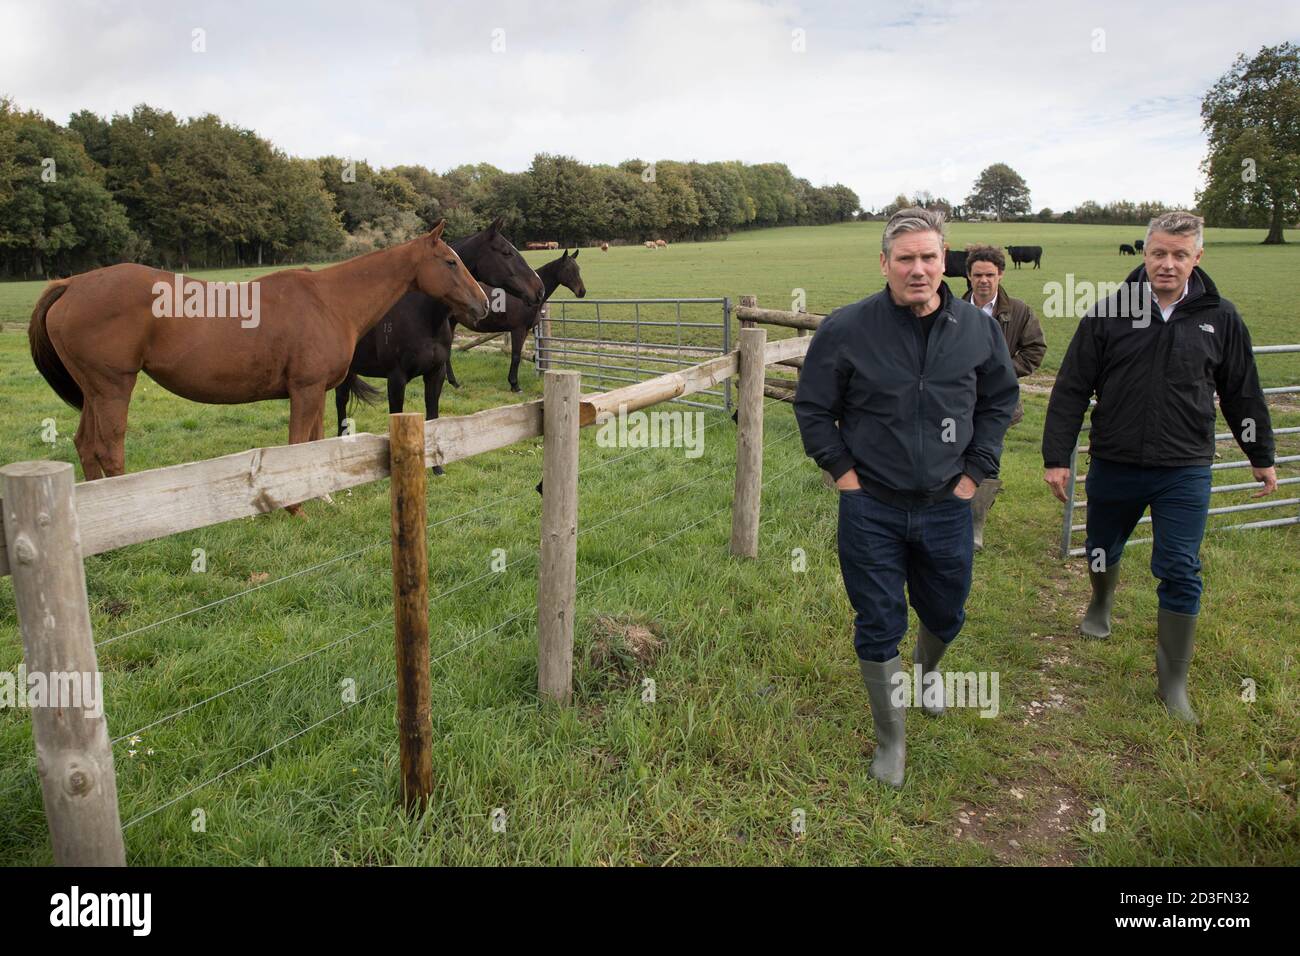 Il leader del lavoro Sir Keir Starmer durante una visita alla fattoria del presidente dell'Unione degli agricoltori nazionali Minette Batters nel Wiltshire, come ha invitato il primo ministro a sostenere gli agricoltori britannici garantendo gli elevati standard di cibo e agricoltura del Regno Unito dopo la Brexit. Foto Stock